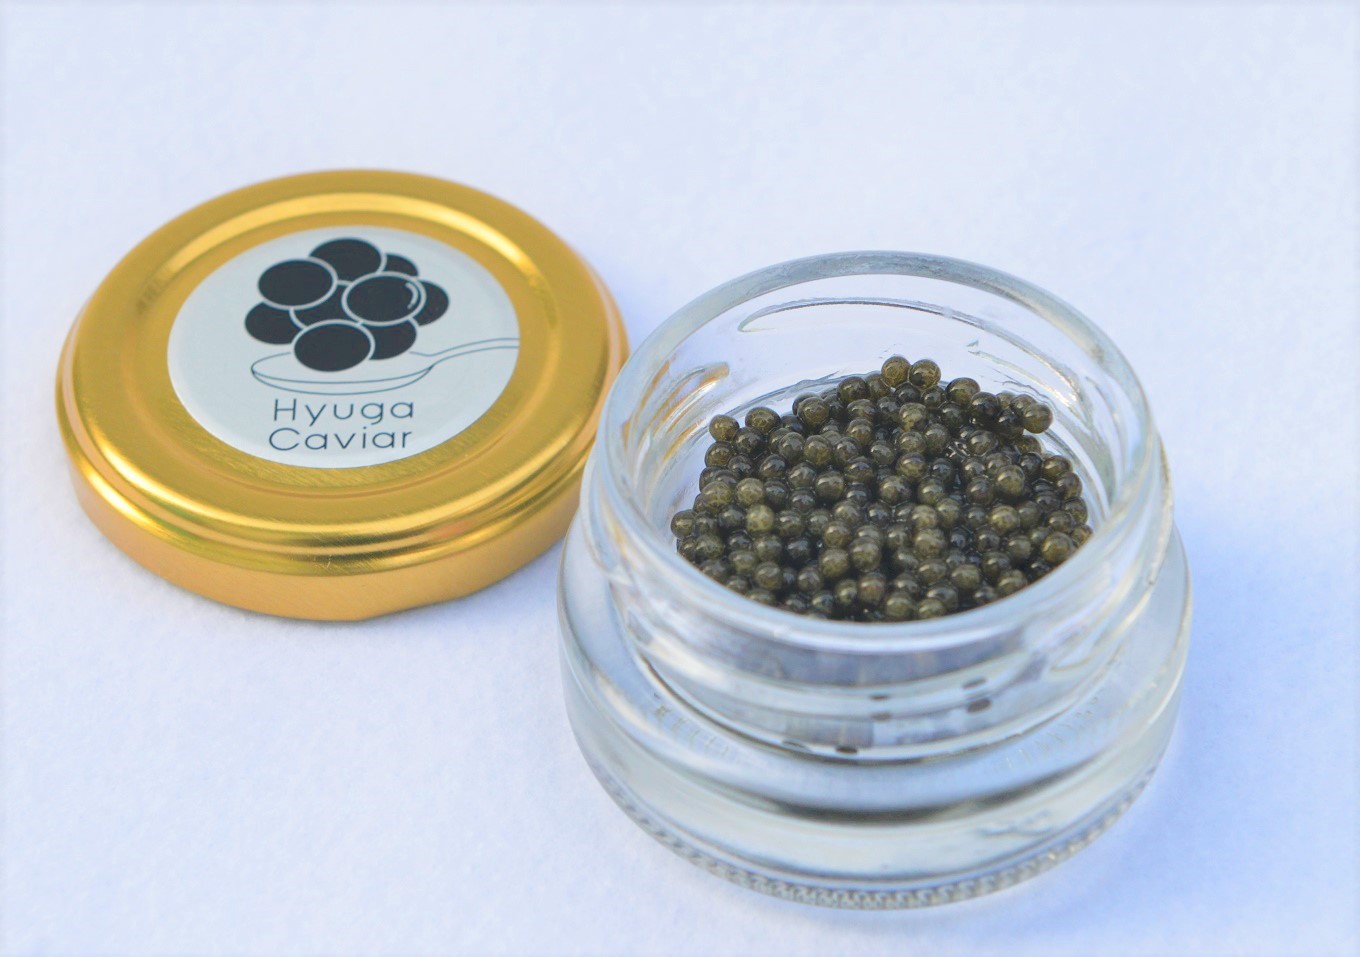 キャビア本来の濃厚な味を愉しめるフレッシュキャビア 日向キャビア Hyuga Caviar ショッピング 販売実績No.1 フレッシュキャビア 冷凍 10g 13-115